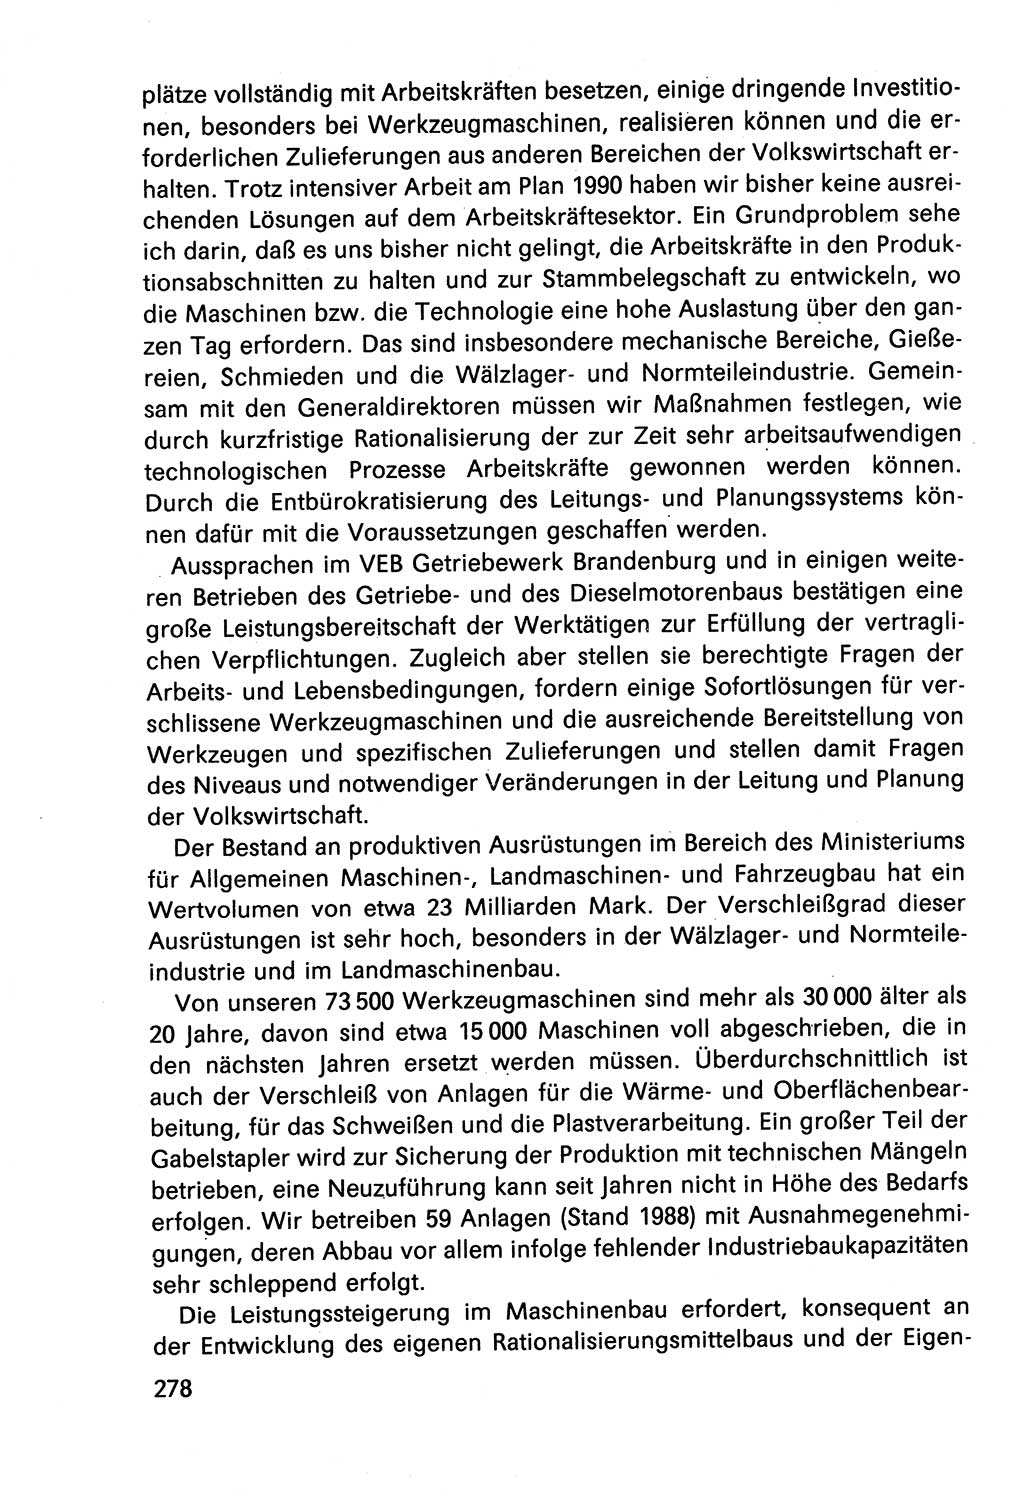 Diskussionsbeiträge, 10. Tagung des ZK (Zentralkomitee) der SED (Sozialistische Einheitspartei Deutschlands) [Deutsche Demokratische Republik (DDR)] 1989, Seite 278 (Disk.-Beitr. 10. Tg. ZK SED DDR 1989, S. 278)